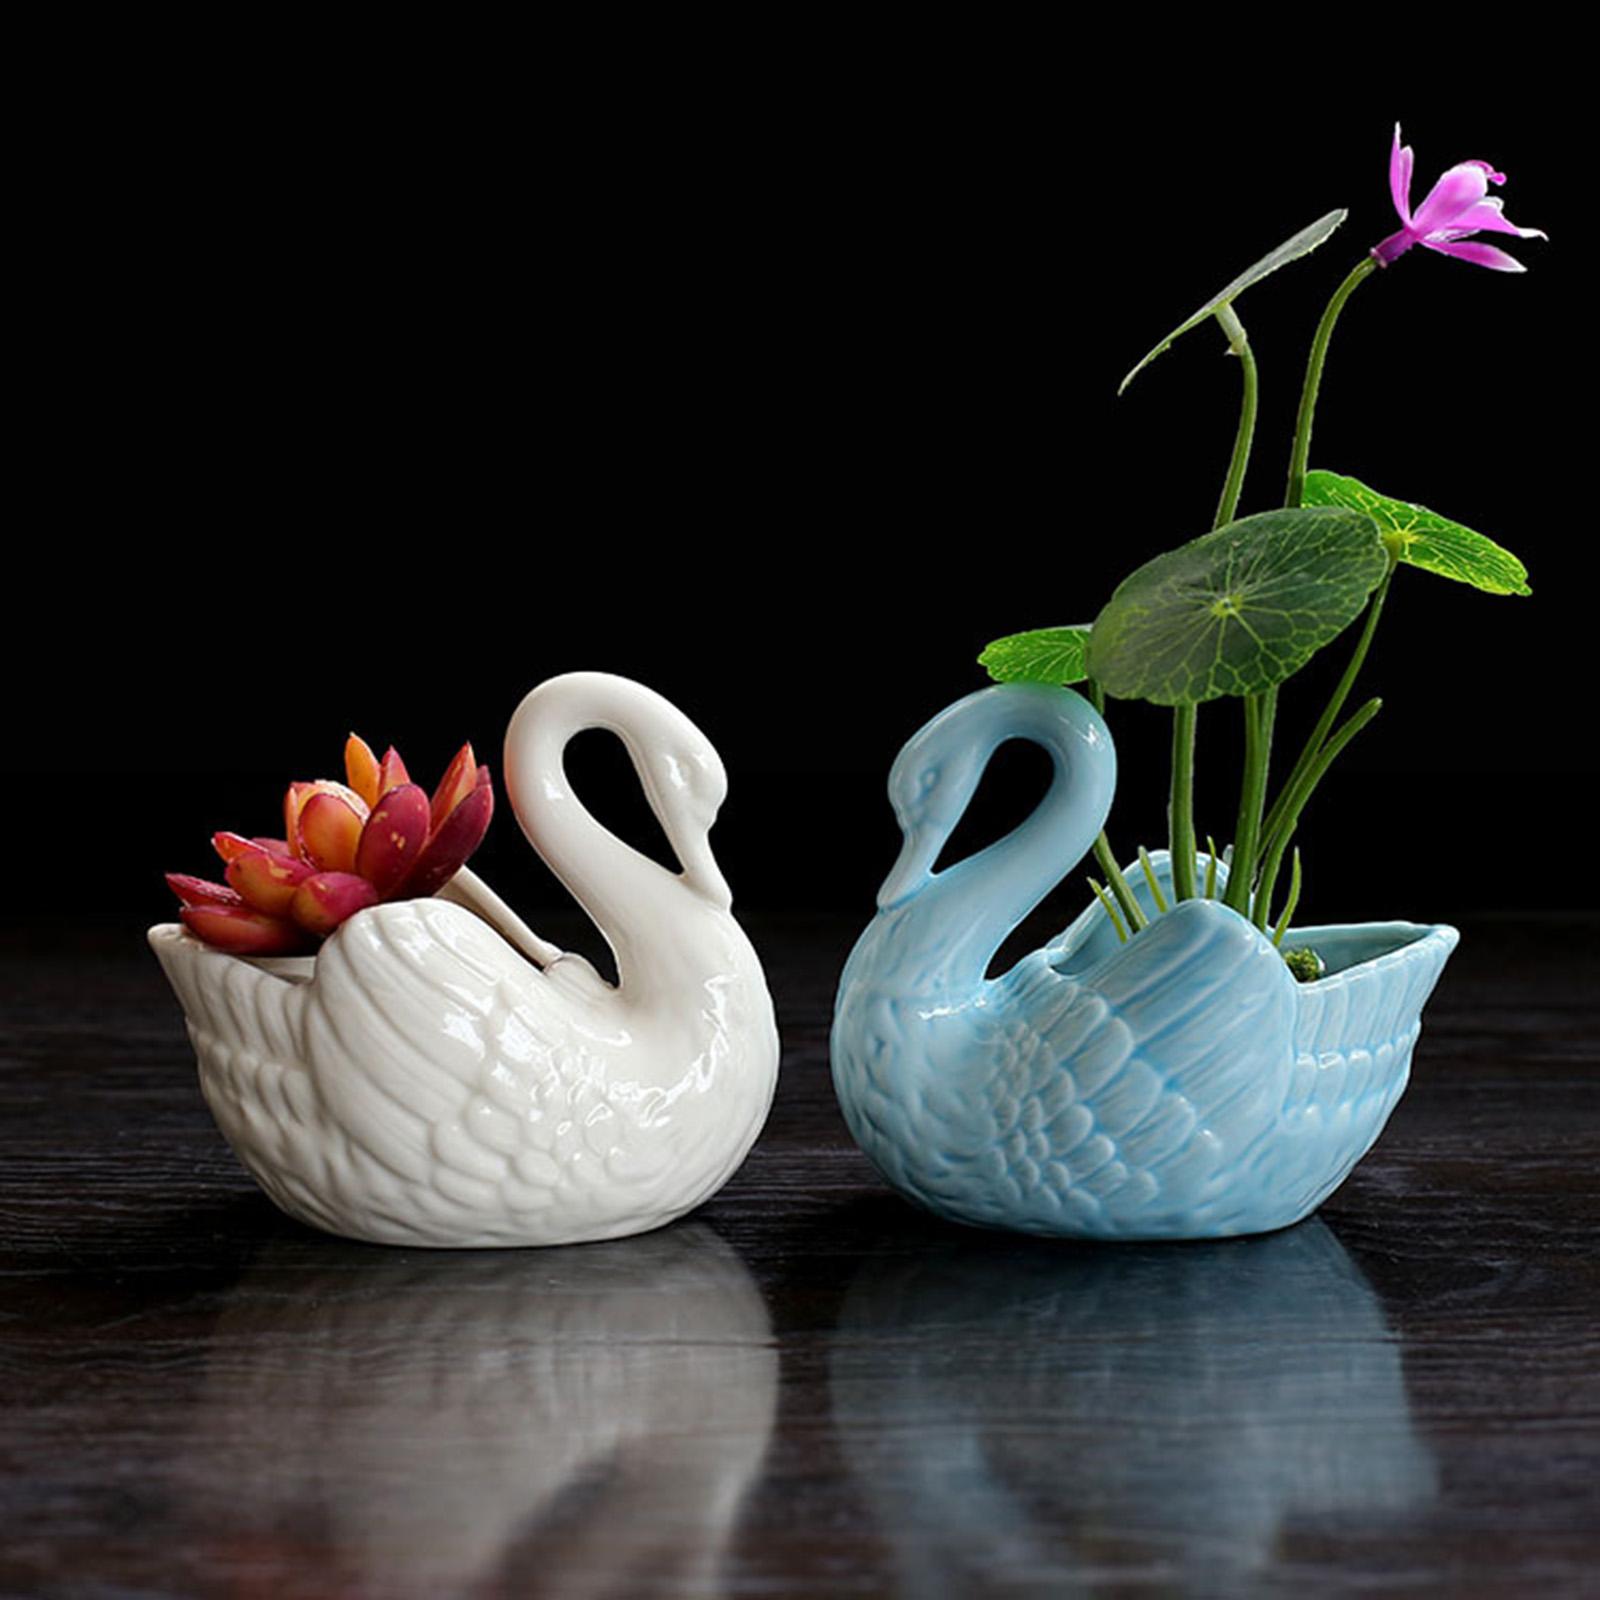 2Pcs Cute Swan Succulent Planter Pots Ornament for Office Home Decorations